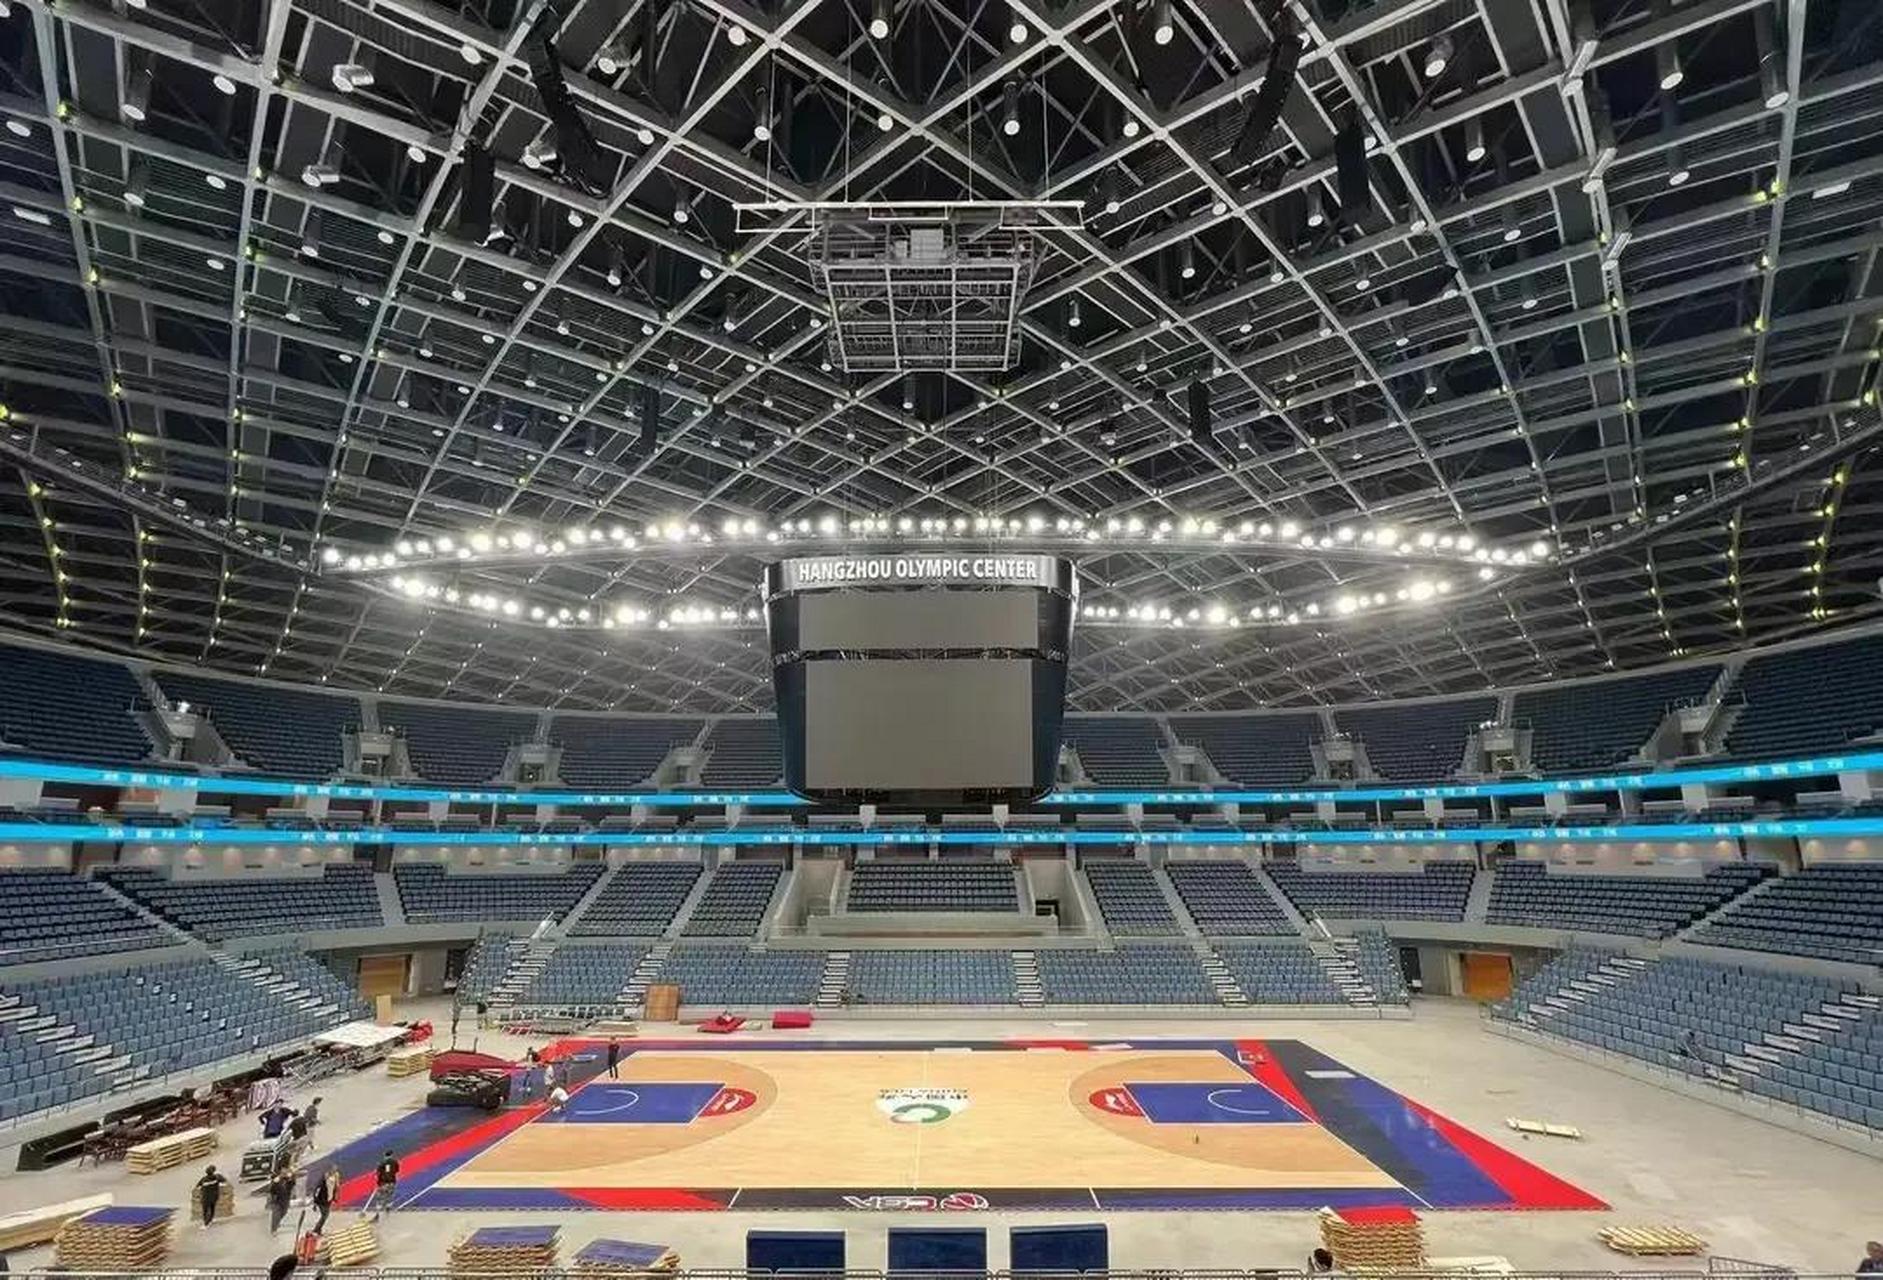 cba总决赛浙江稠州男篮的主场在今年亚运会的场馆浙江奥体中心,可以